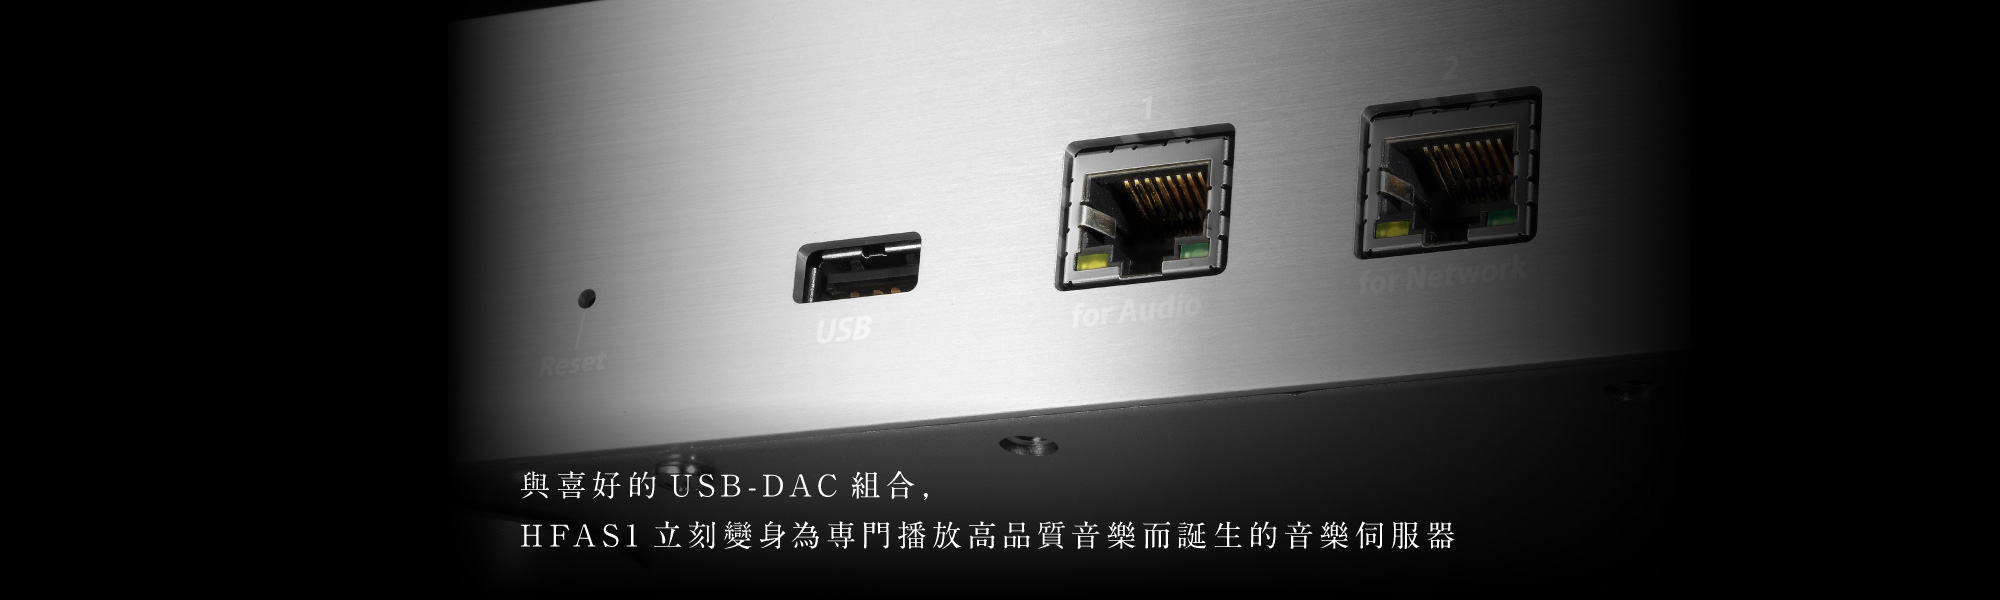 與喜好的USB-DAC組合，HFAS1立刻變身為専門播放高品質音樂而誕生的音樂伺服器